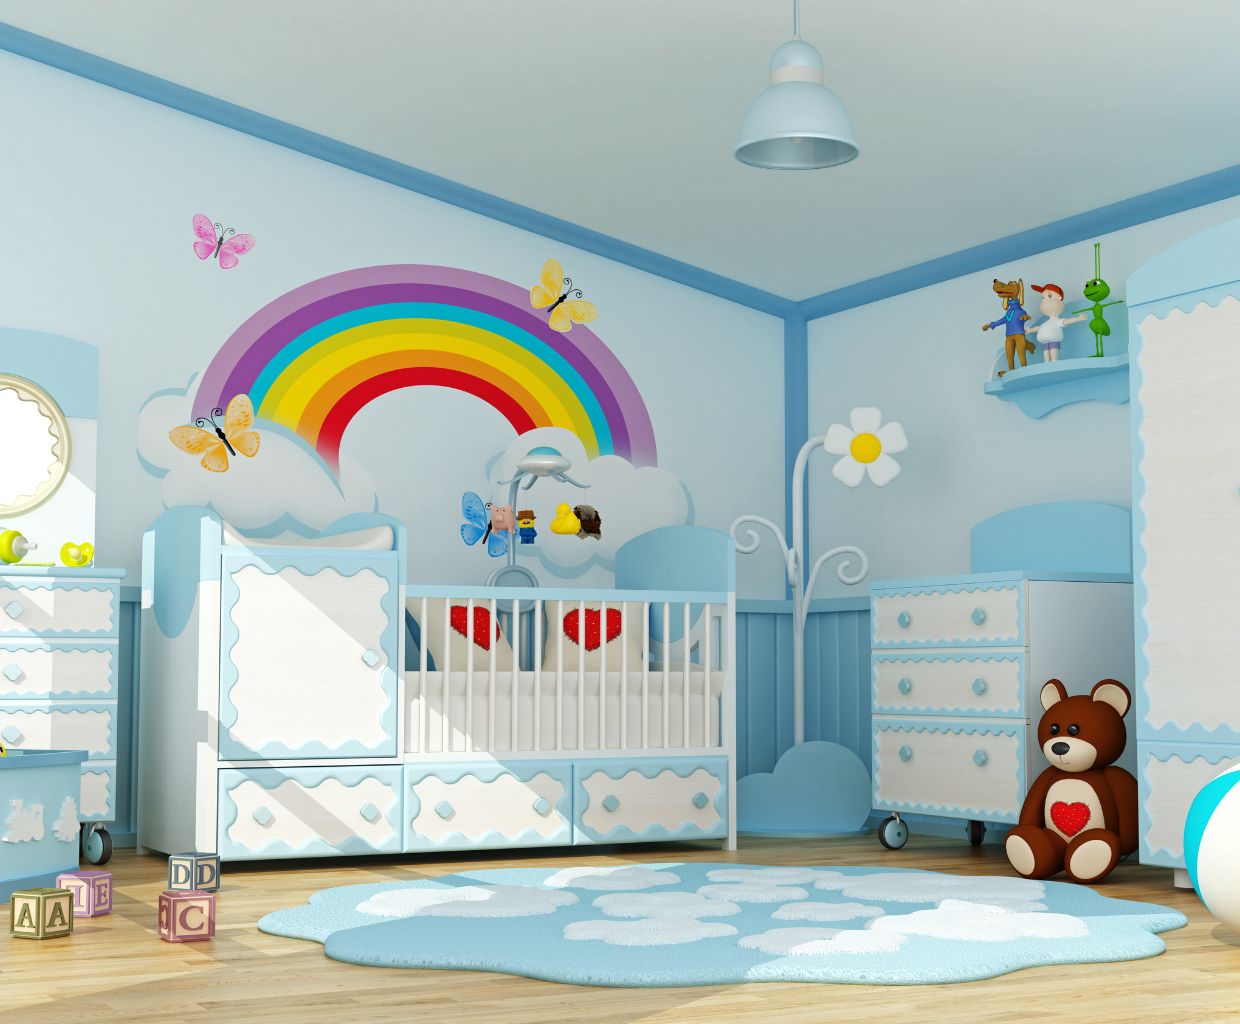 Cute Baby Room Ceiling Fan